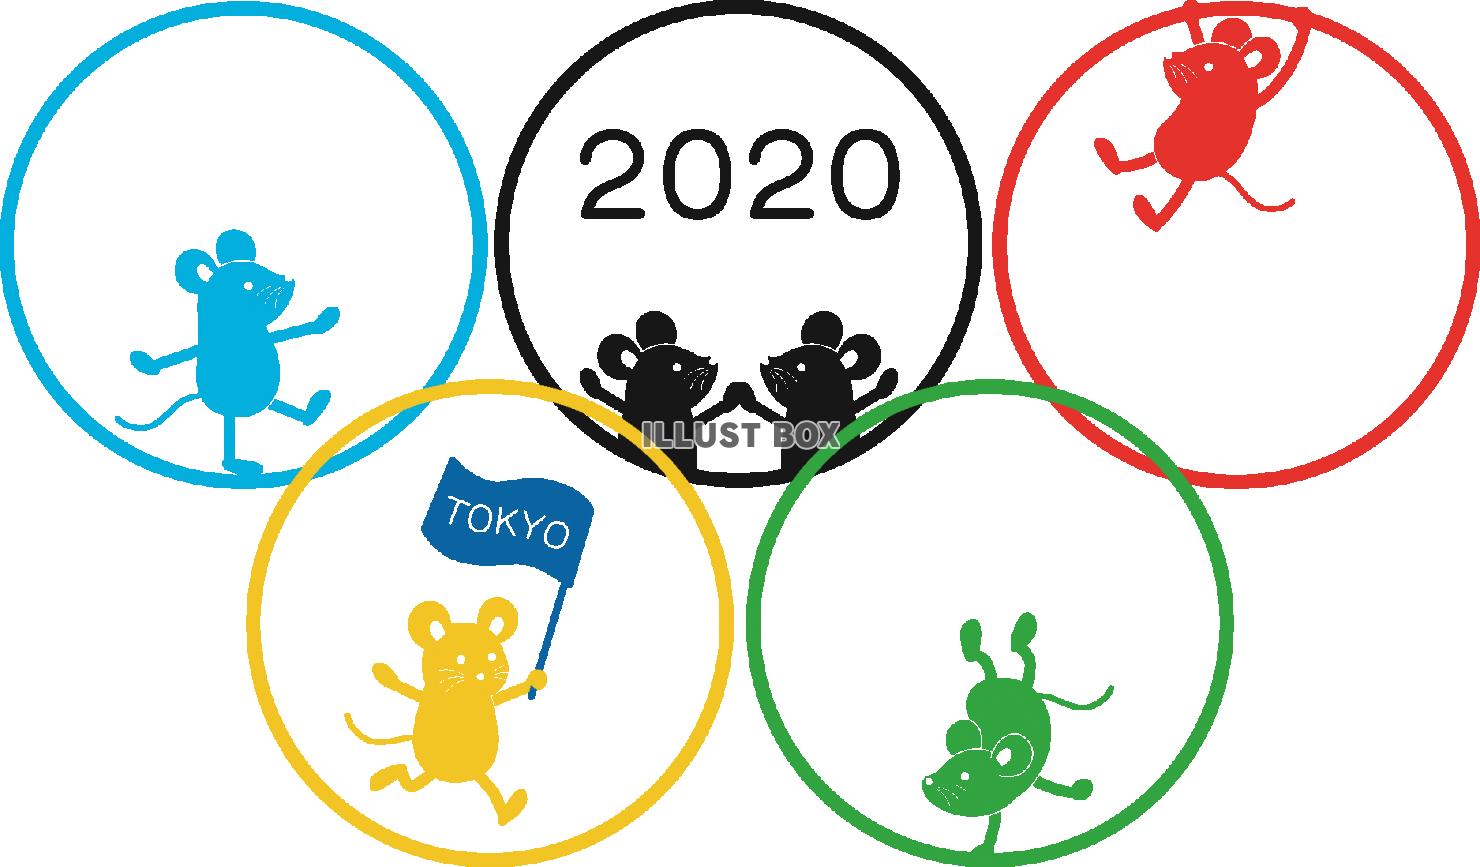 東京オリンピック イラスト無料